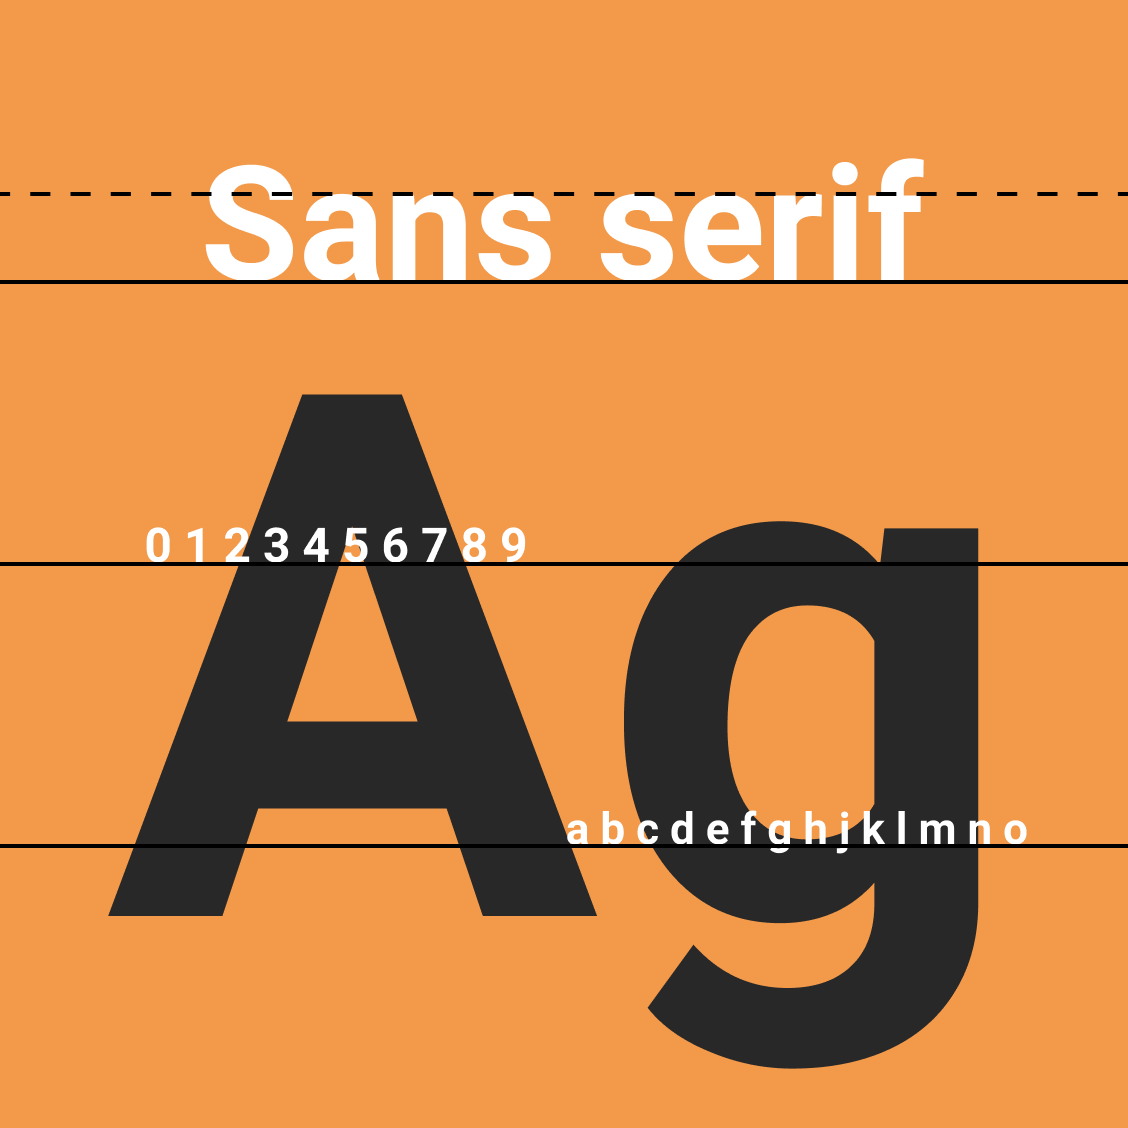 serif vs sans serif body text